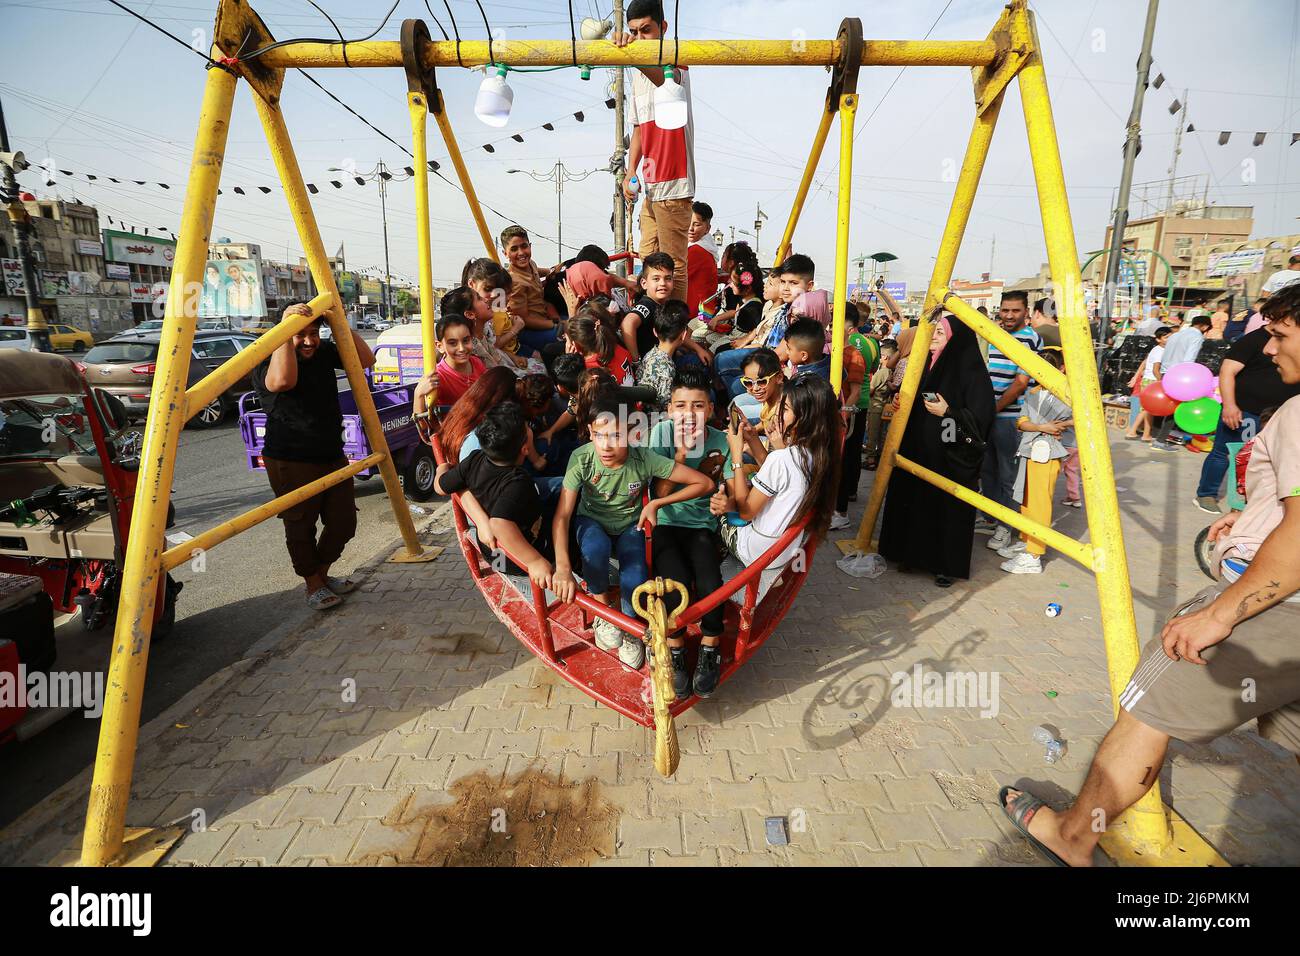 03 de mayo de 2022, Irak, Bagdad: Un hombre empuja un gran columpio con varios niños en un parque de diversiones en el distrito de la ciudad de Sadr mientras celebran el segundo día de la fiesta de Eid al-Fitr, que marca el final del mes santo musulmán de Ramadán. Foto: Ameer Al-Mohammedawi/dpa Foto de stock